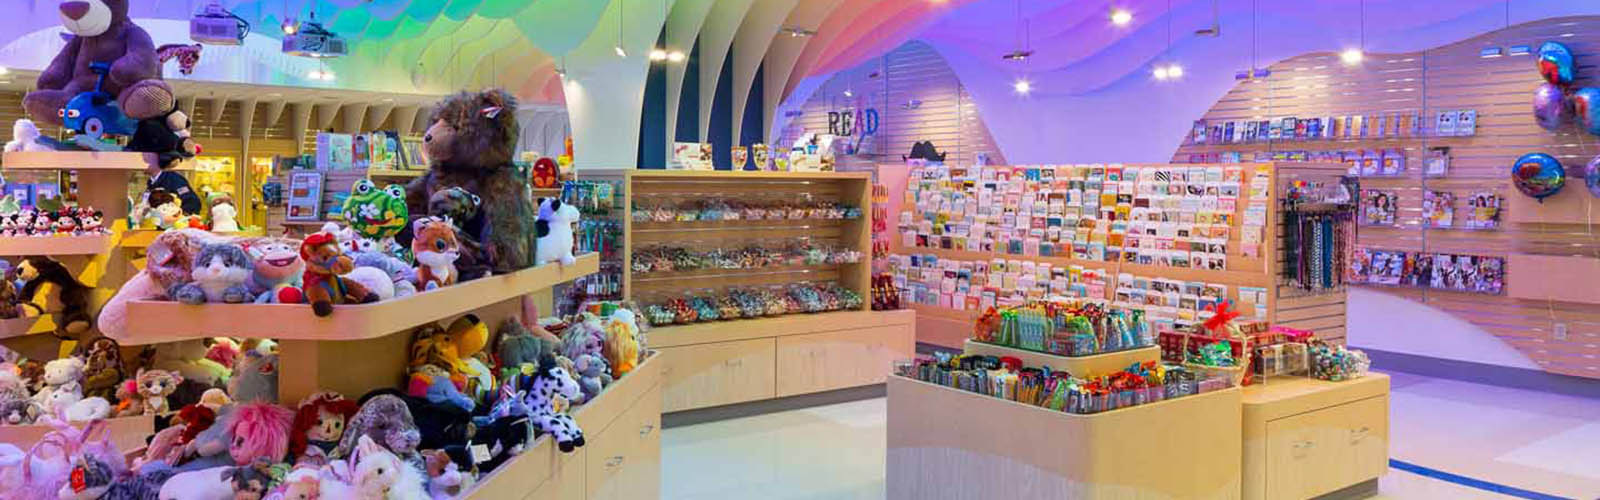 Children's Mercy Gift Shop Interior - 2